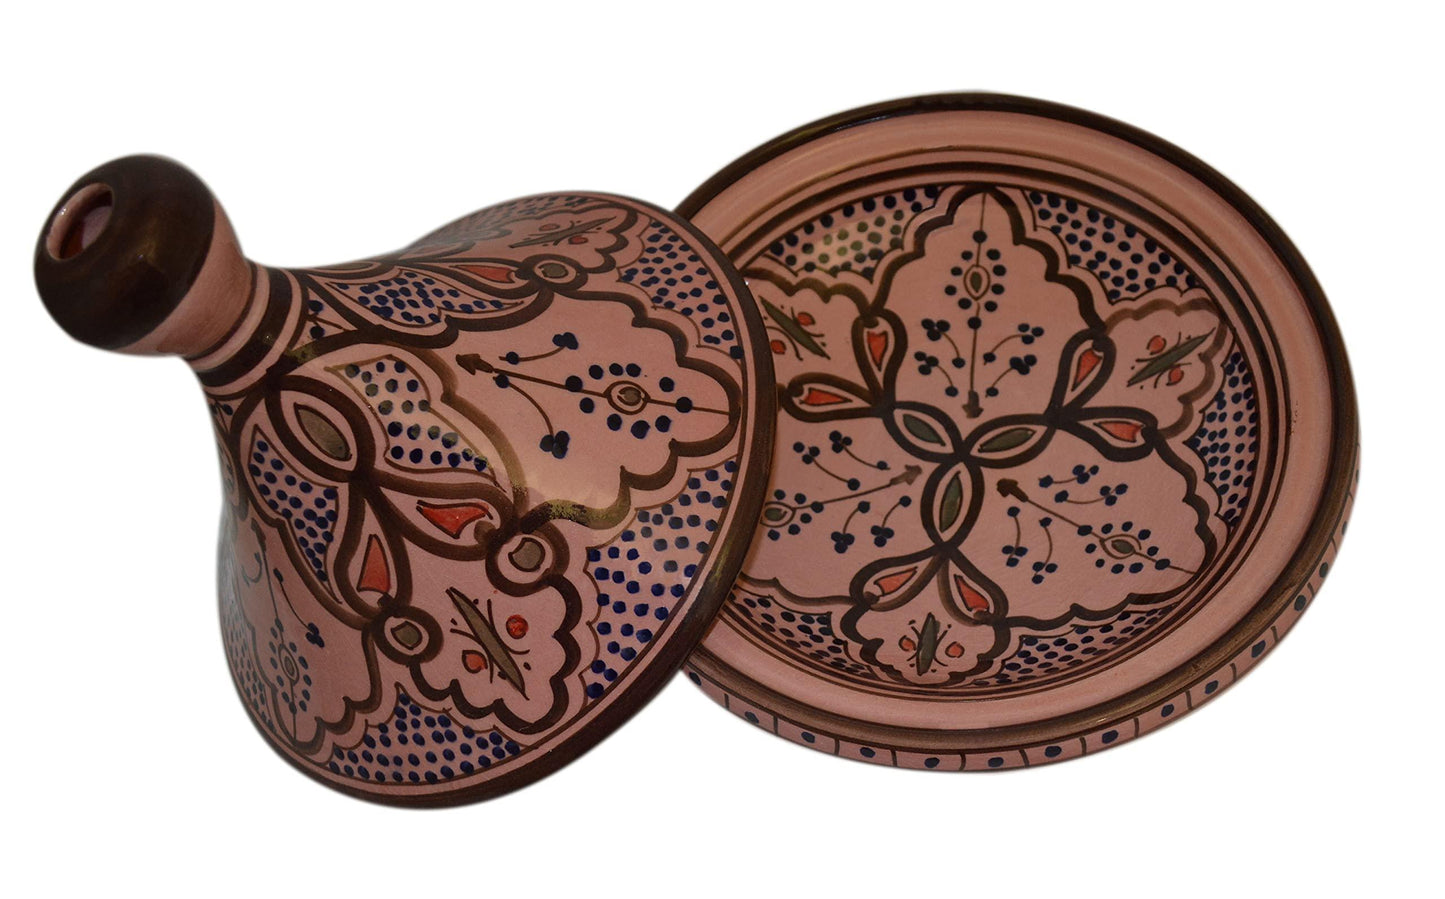 Moroccan Handmade Serving Tagine Exquisite Ceramic With Vivid colors Original Medium 10 inches Across - CookCave